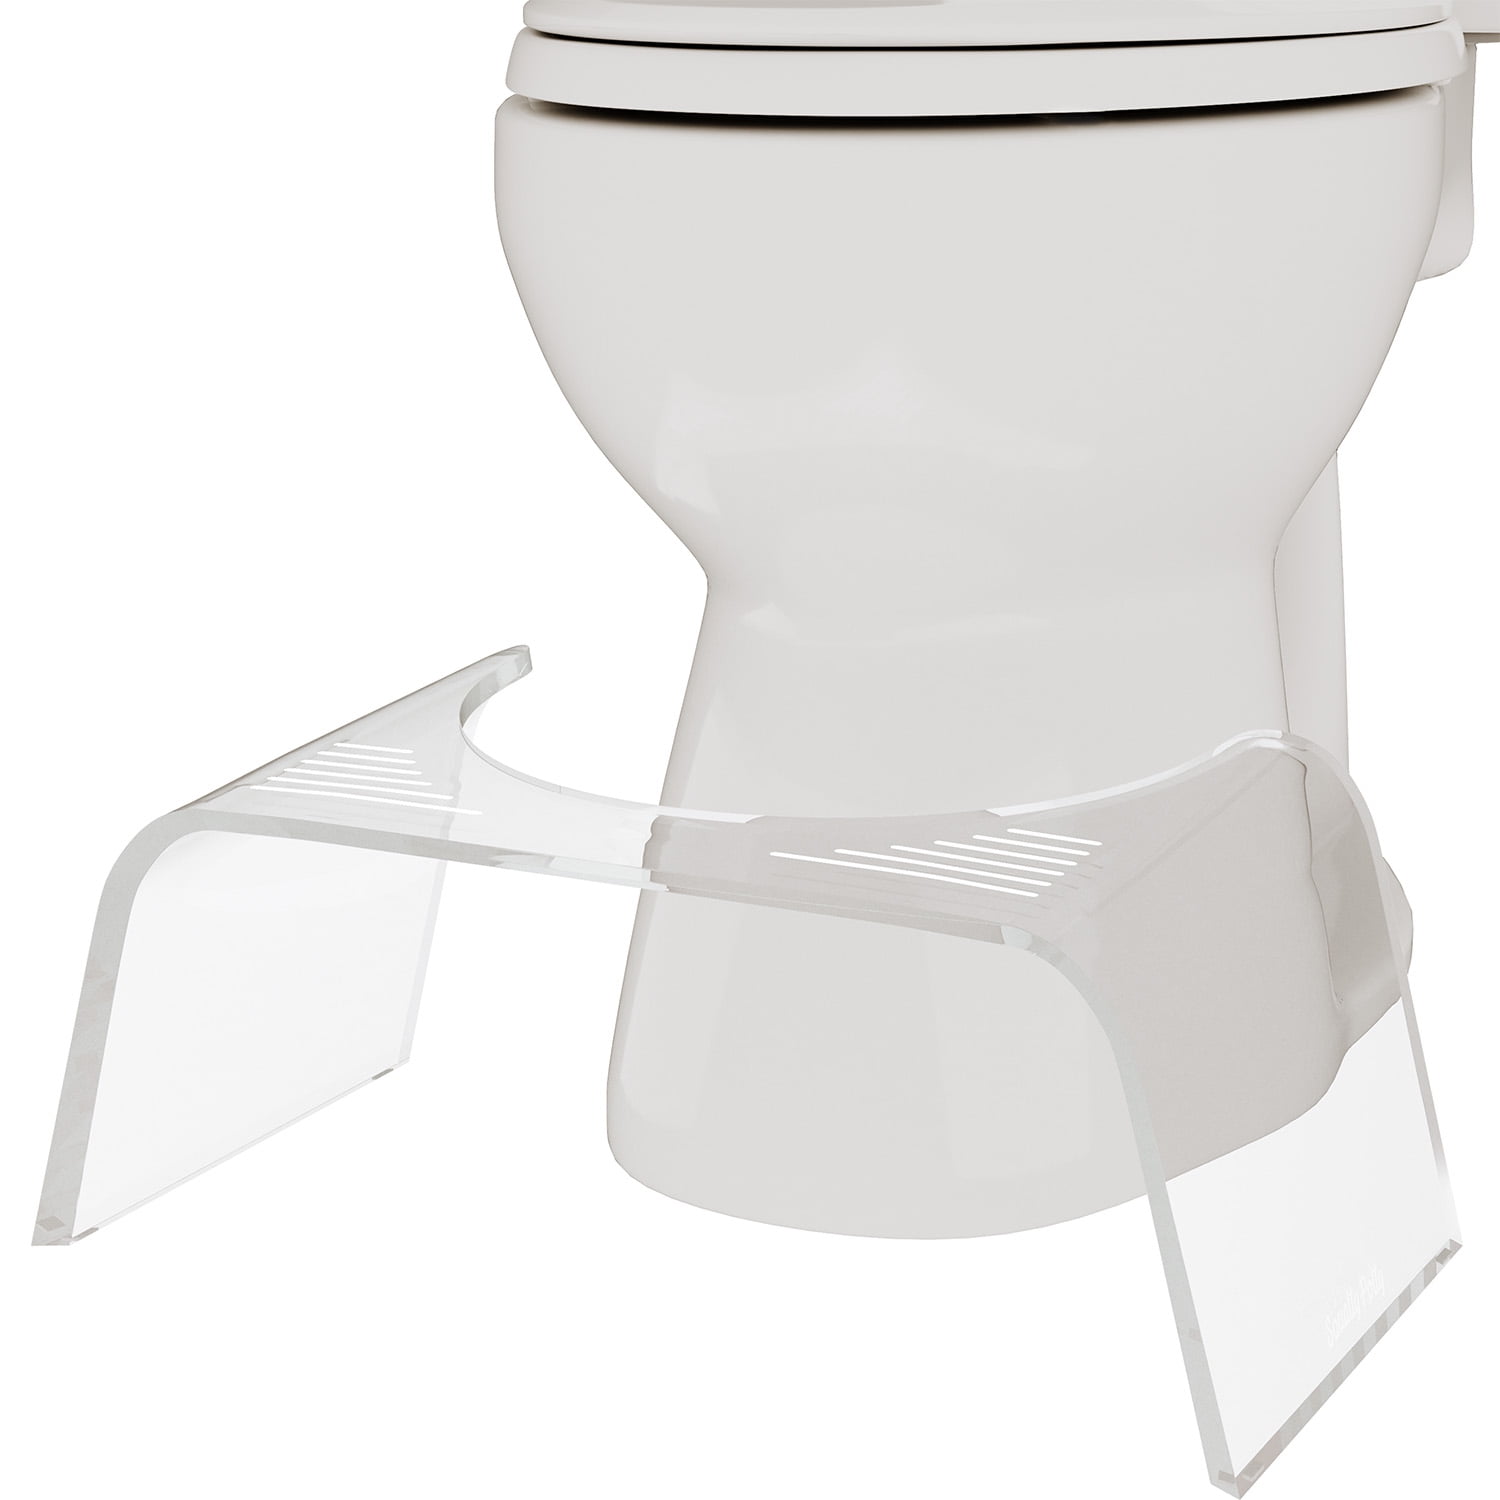 Invisibrush Hidden Toilet Brush White - Squatty Potty